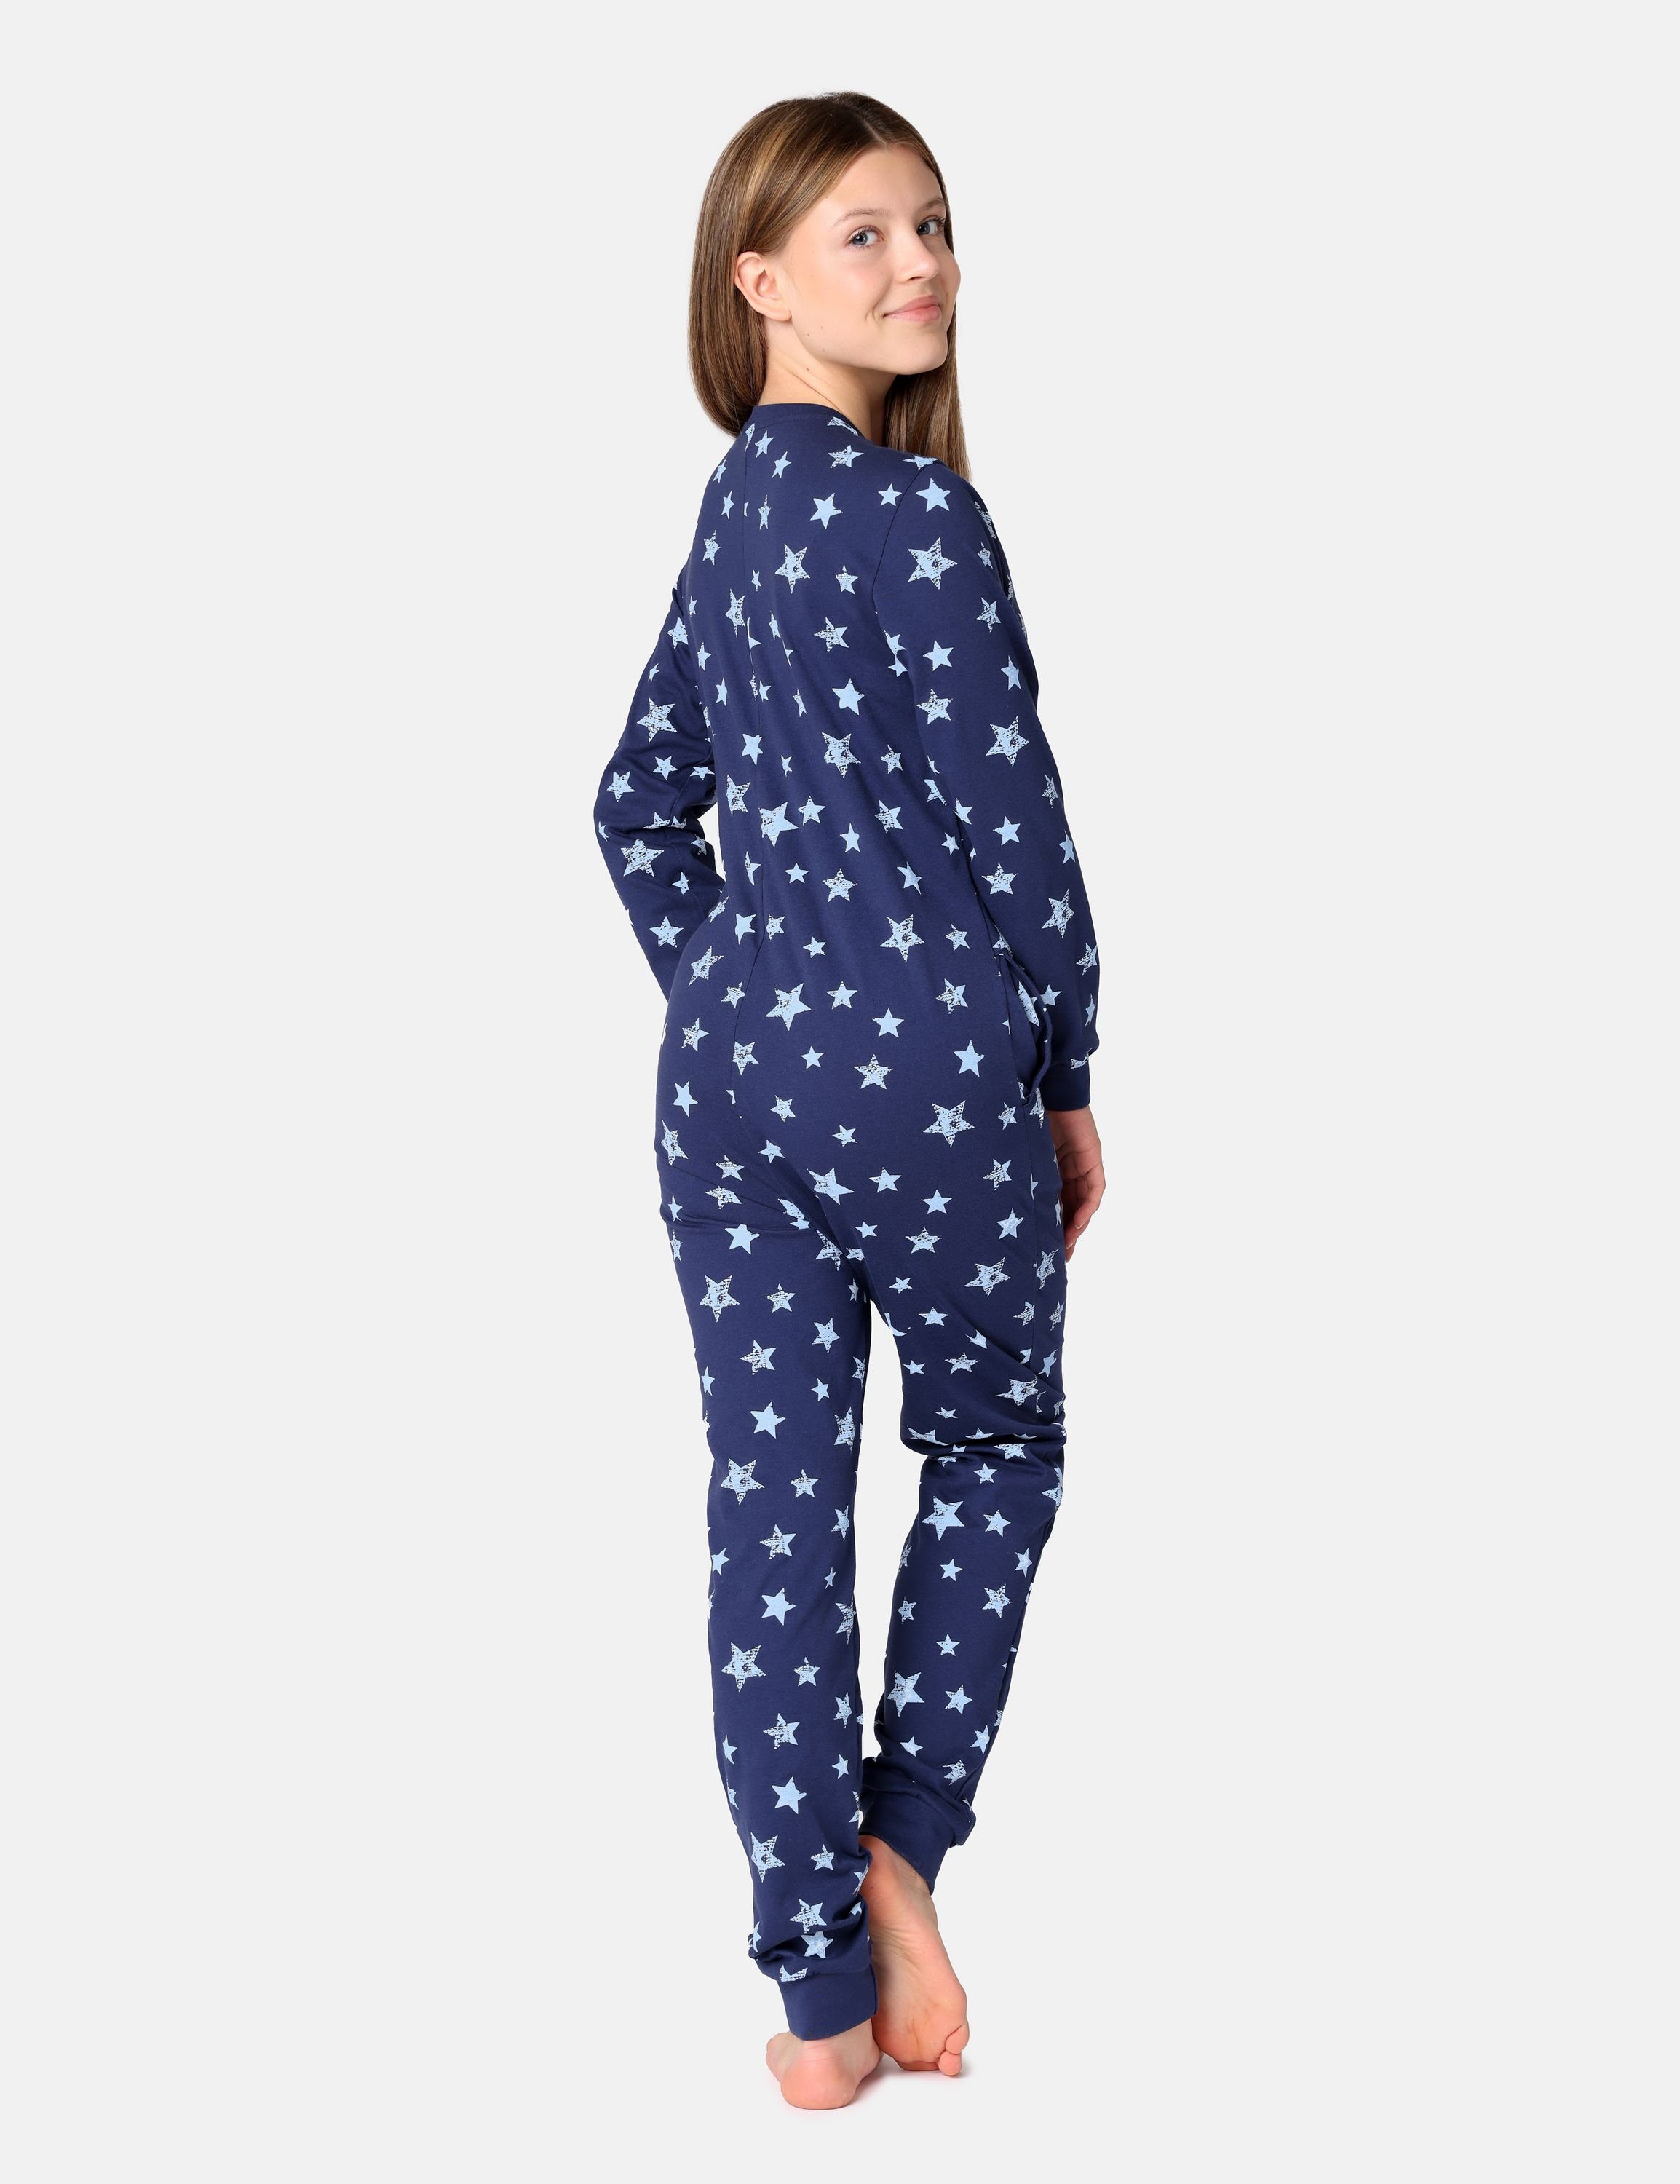 Merry Style Dunkelblau/Blau Jugend MS10-335 Sterne Schlafanzug Schlafoverall Schlafanzug Mädchen